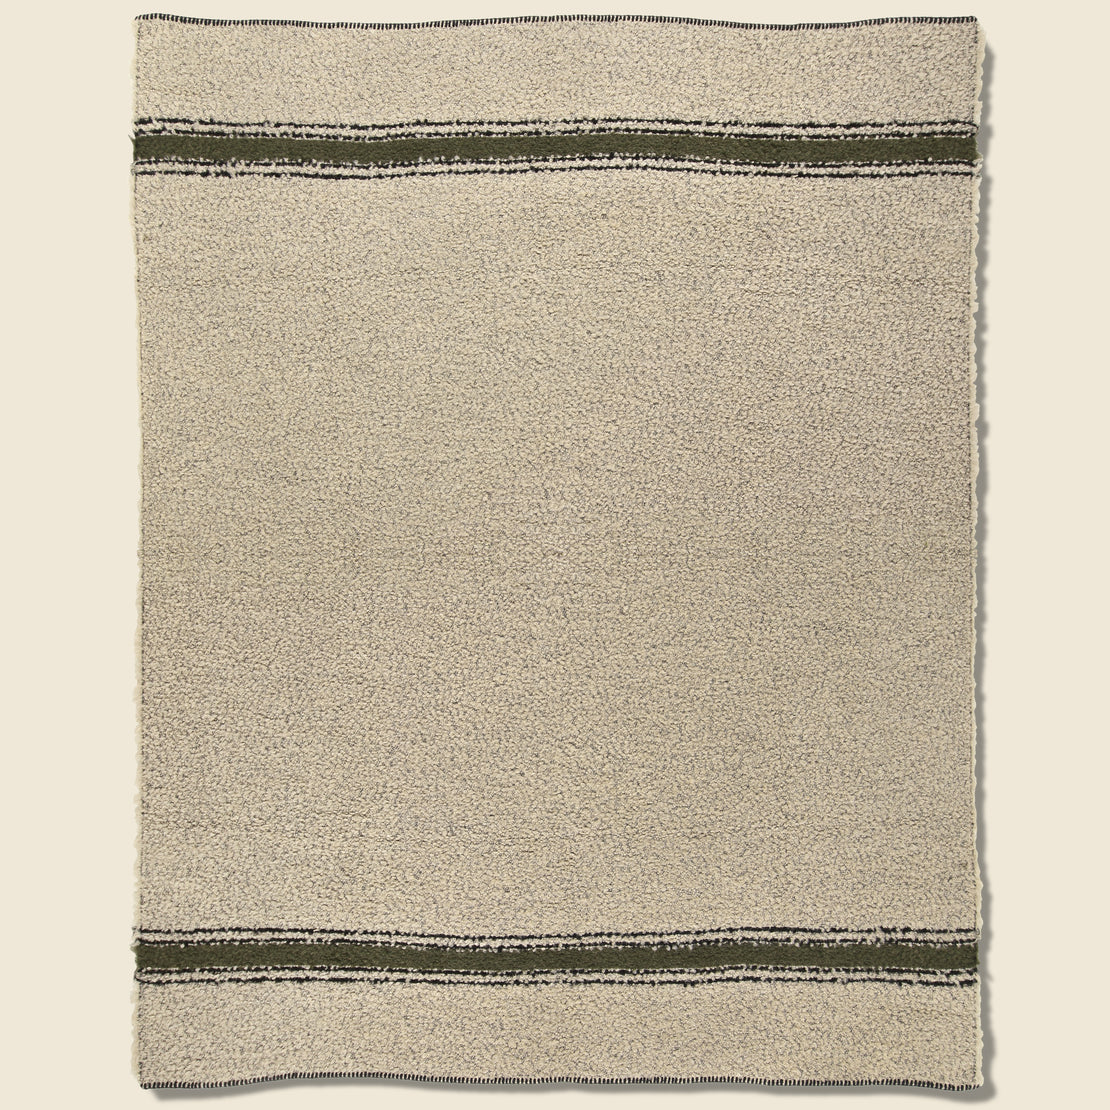 Home Riverton Throw Blanket - Natural/Khaki